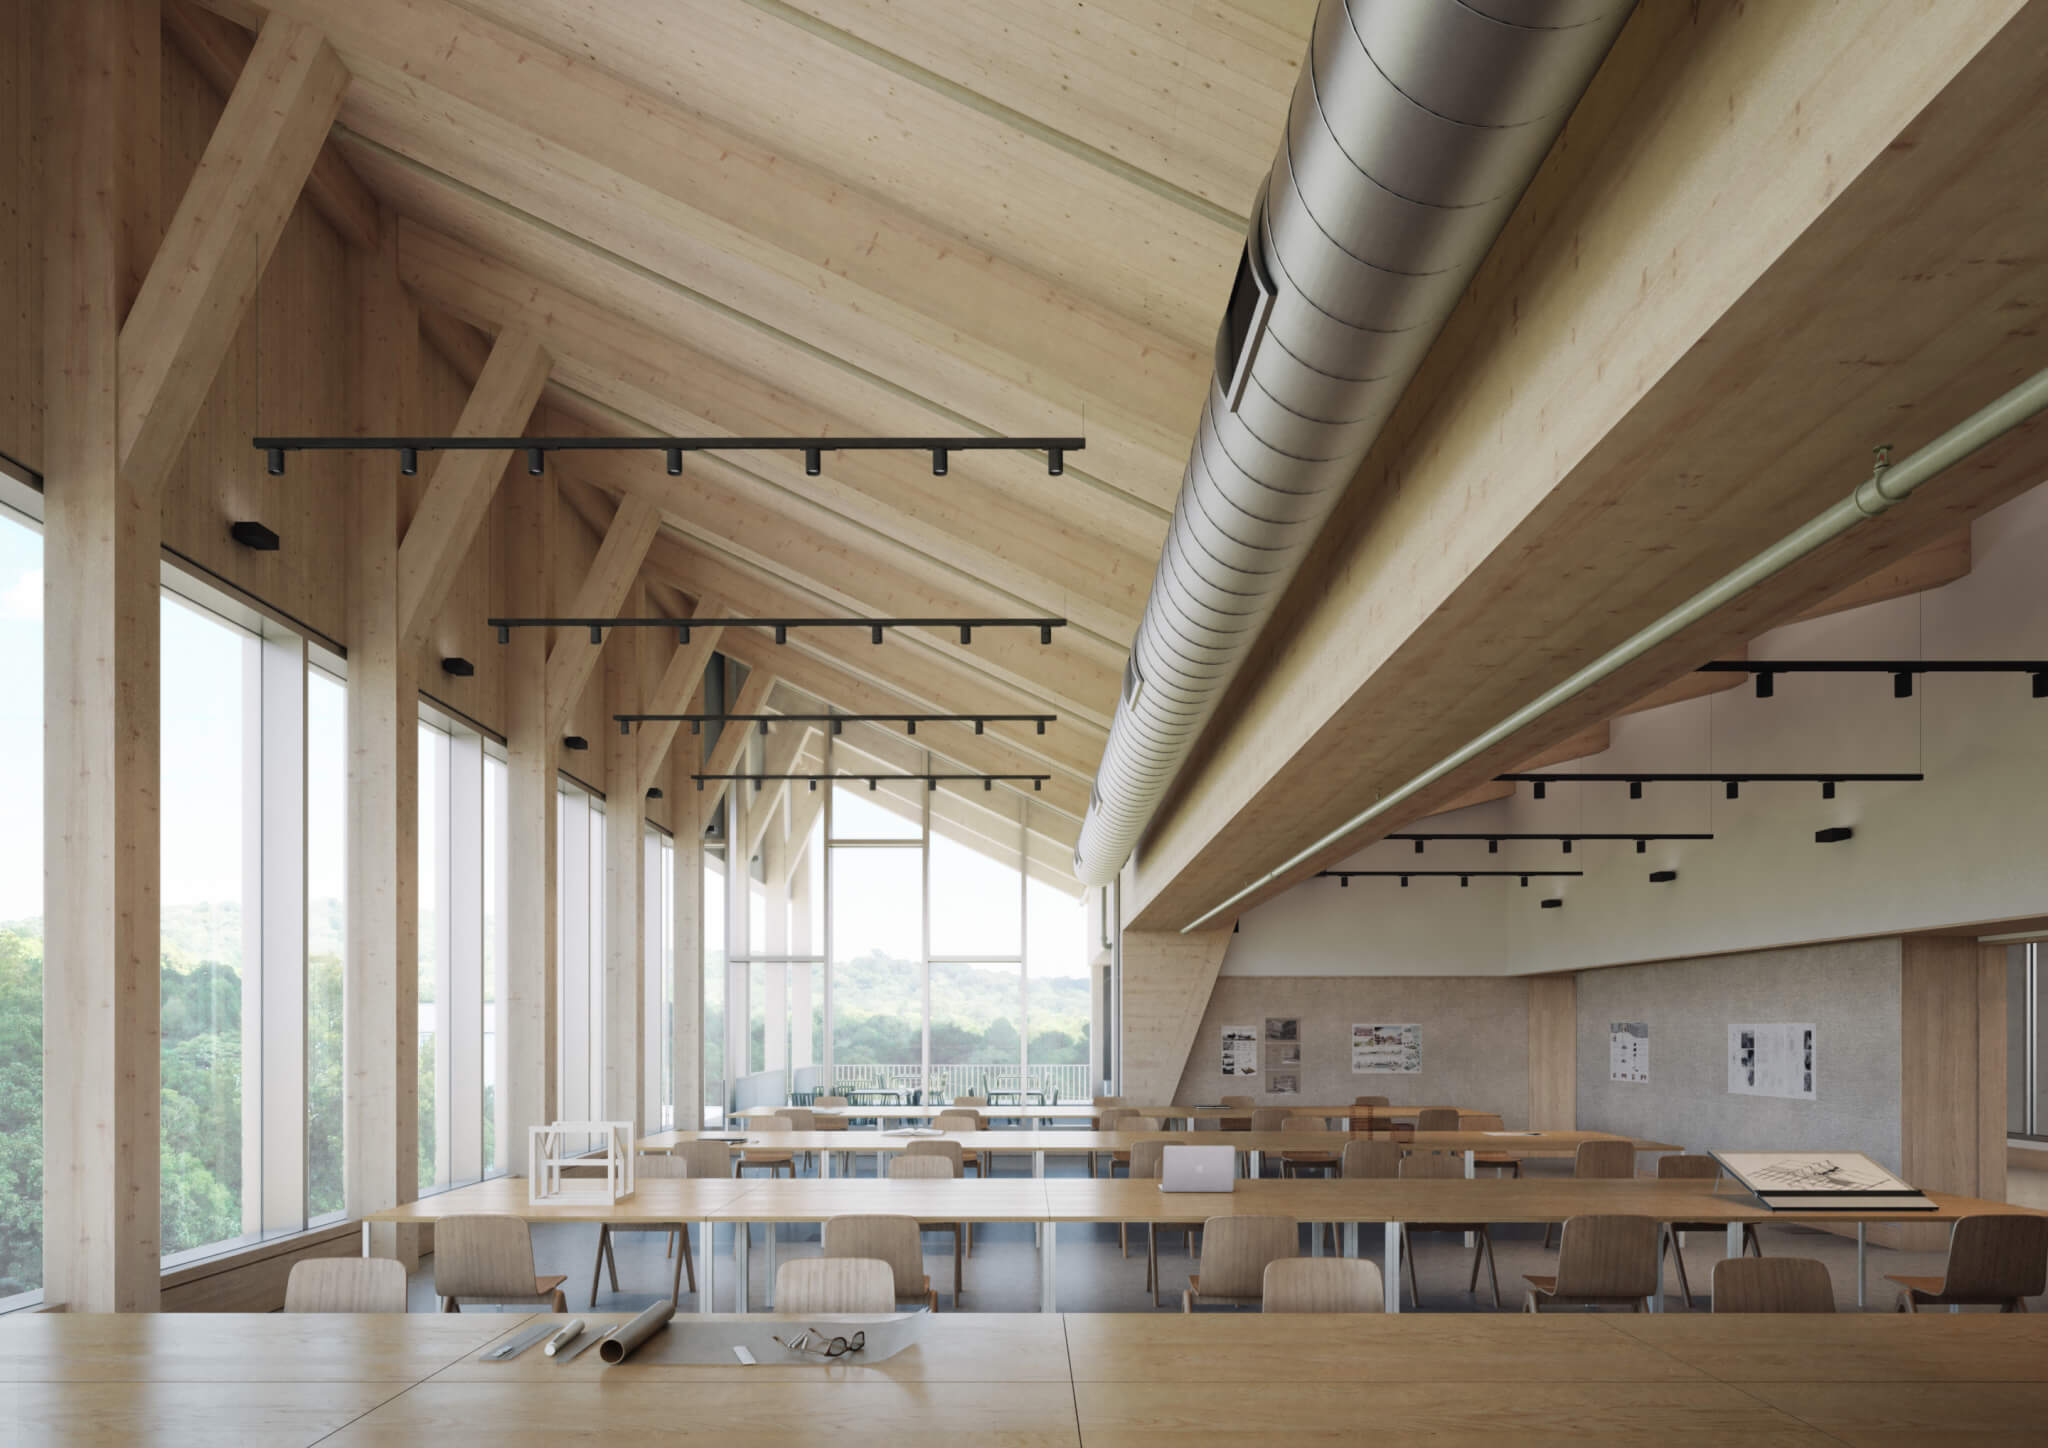 大量木材教室空间的室内效果图